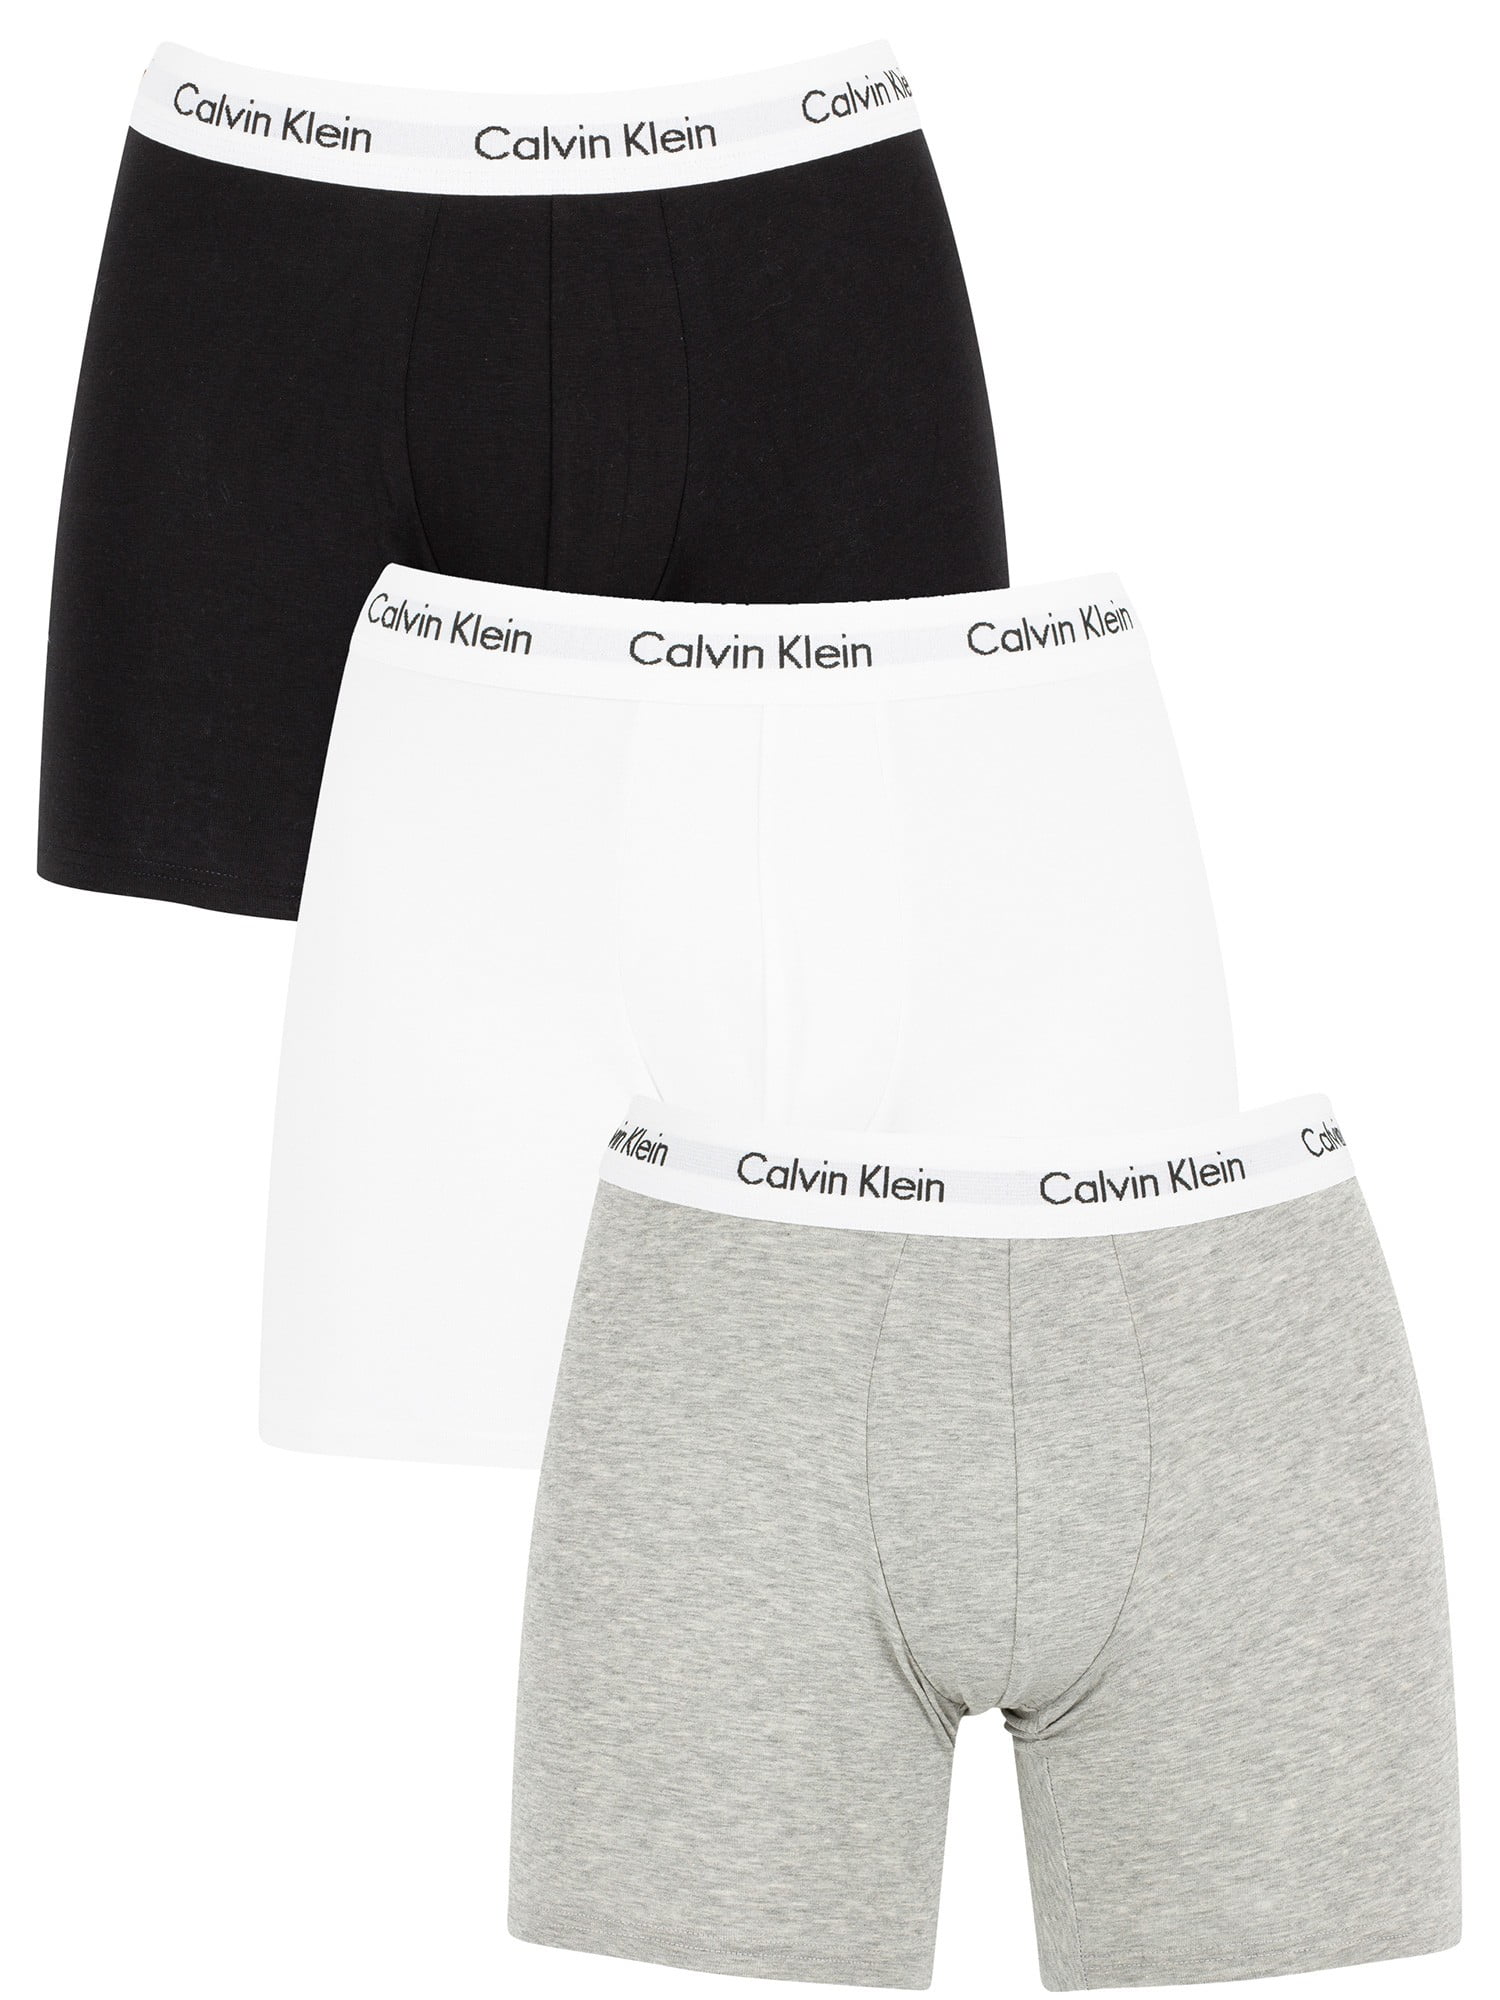 Calvin Klein Cotton Stretch Boxer Brief 3-Pack 